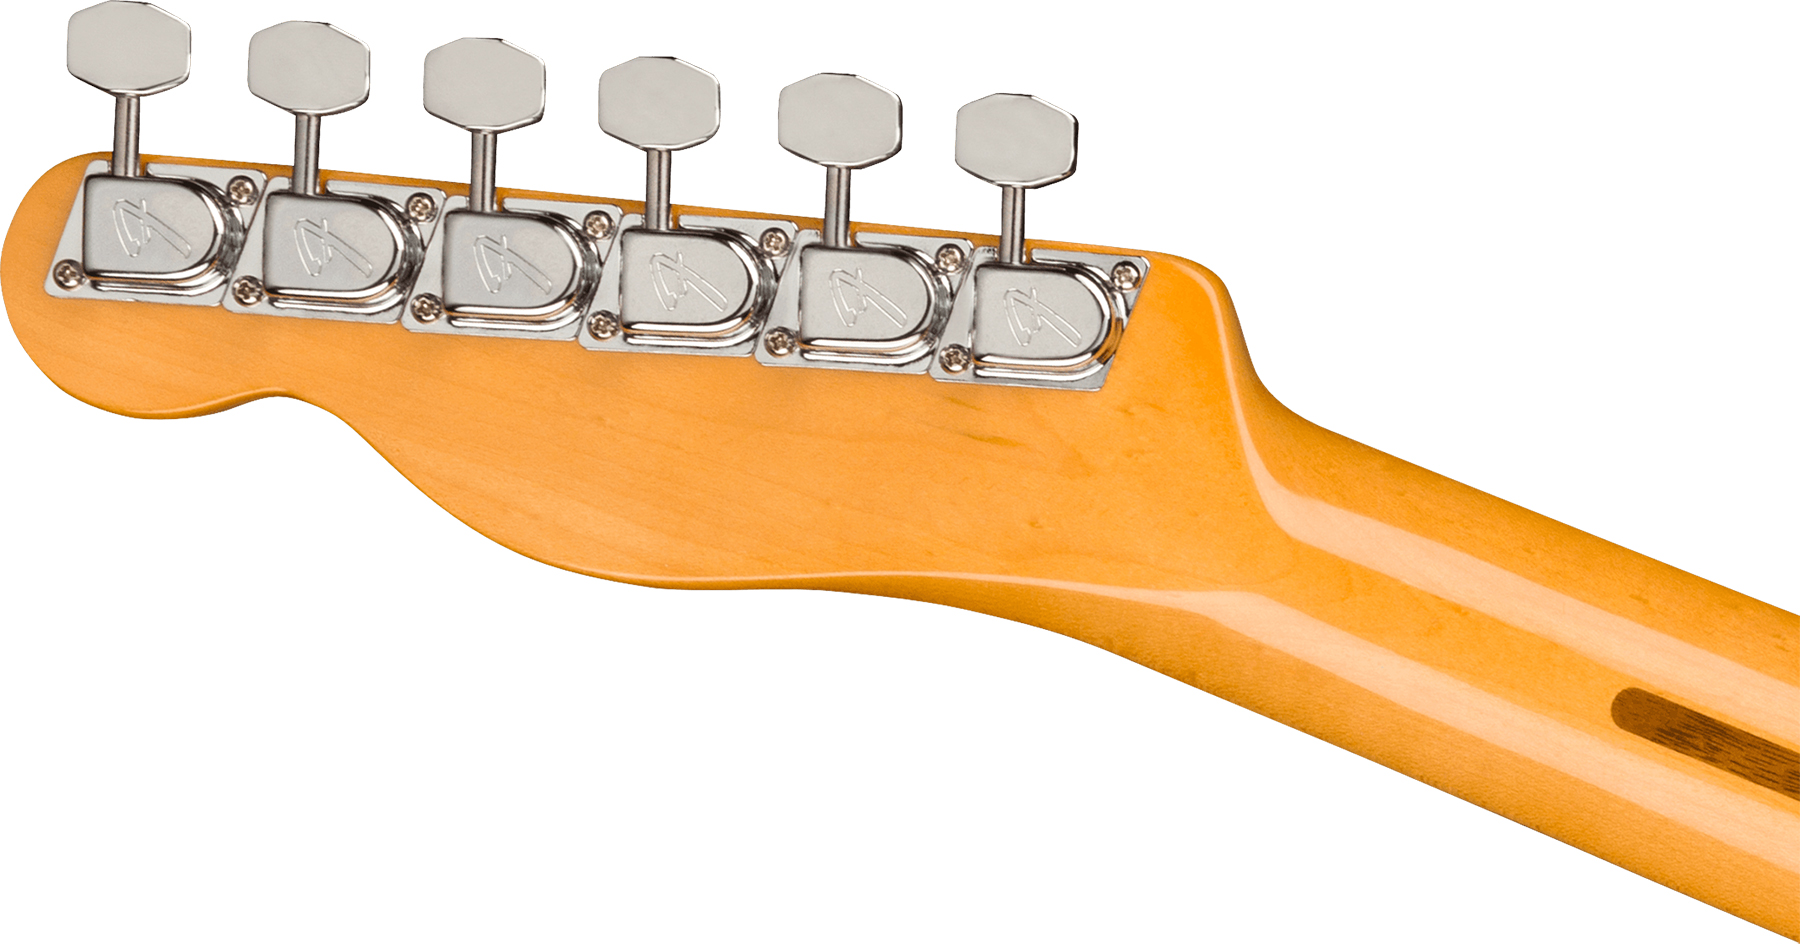 Fender Tele 70s Custom American Original Usa Sh Mn - Vintage Blonde - Guitarra eléctrica con forma de tel - Variation 3